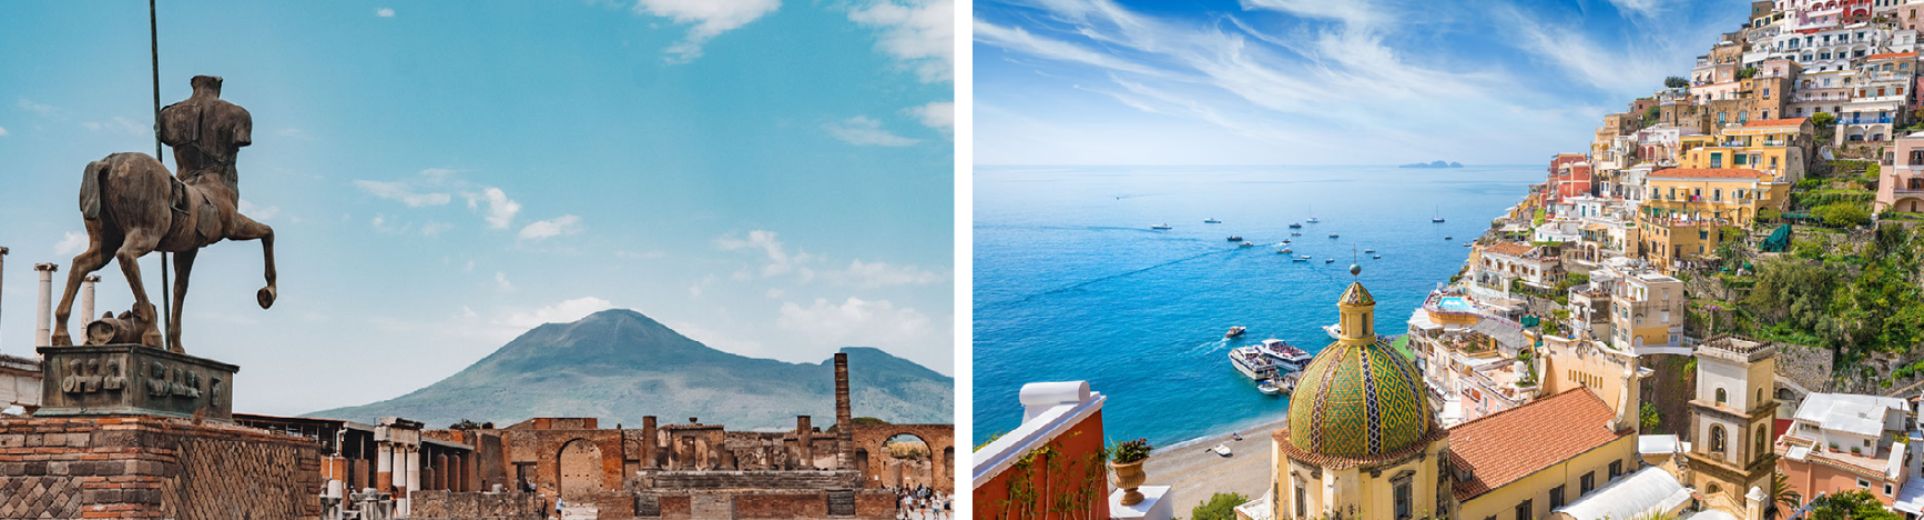 Pompeii and Amalfi Coast day tour